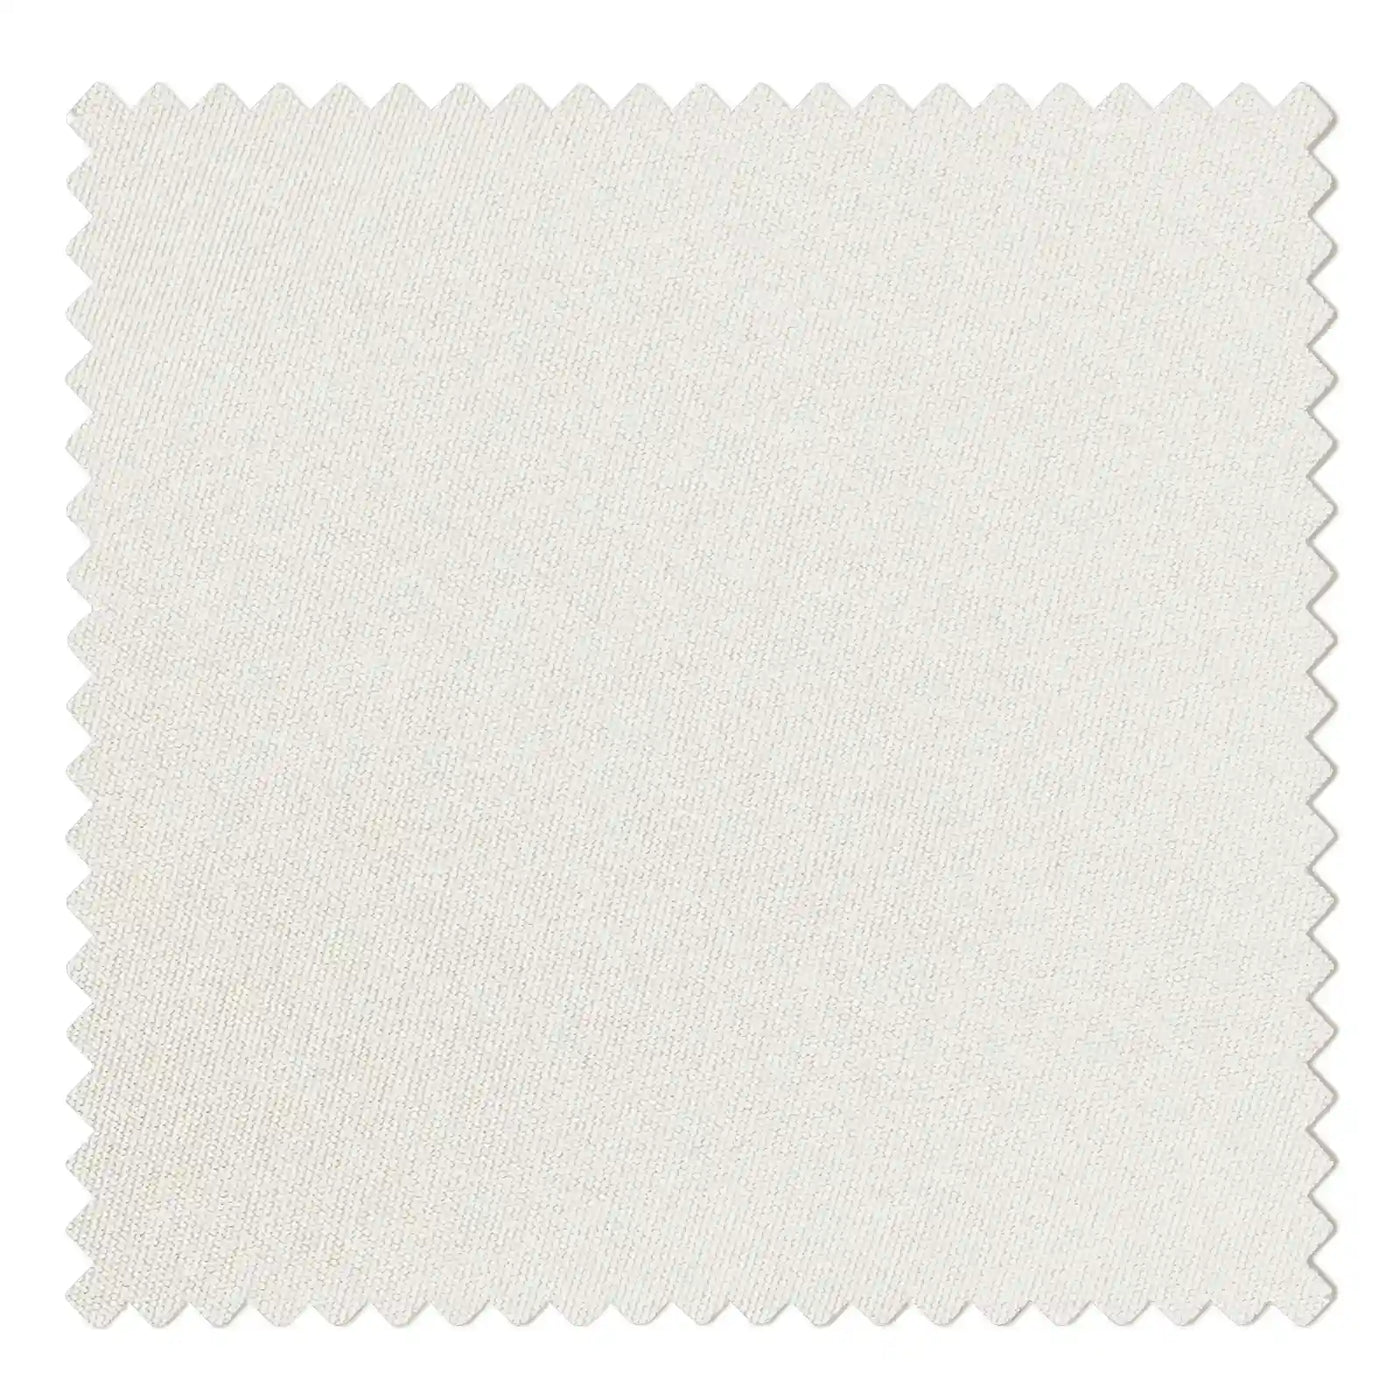 1150-002 Ivory White